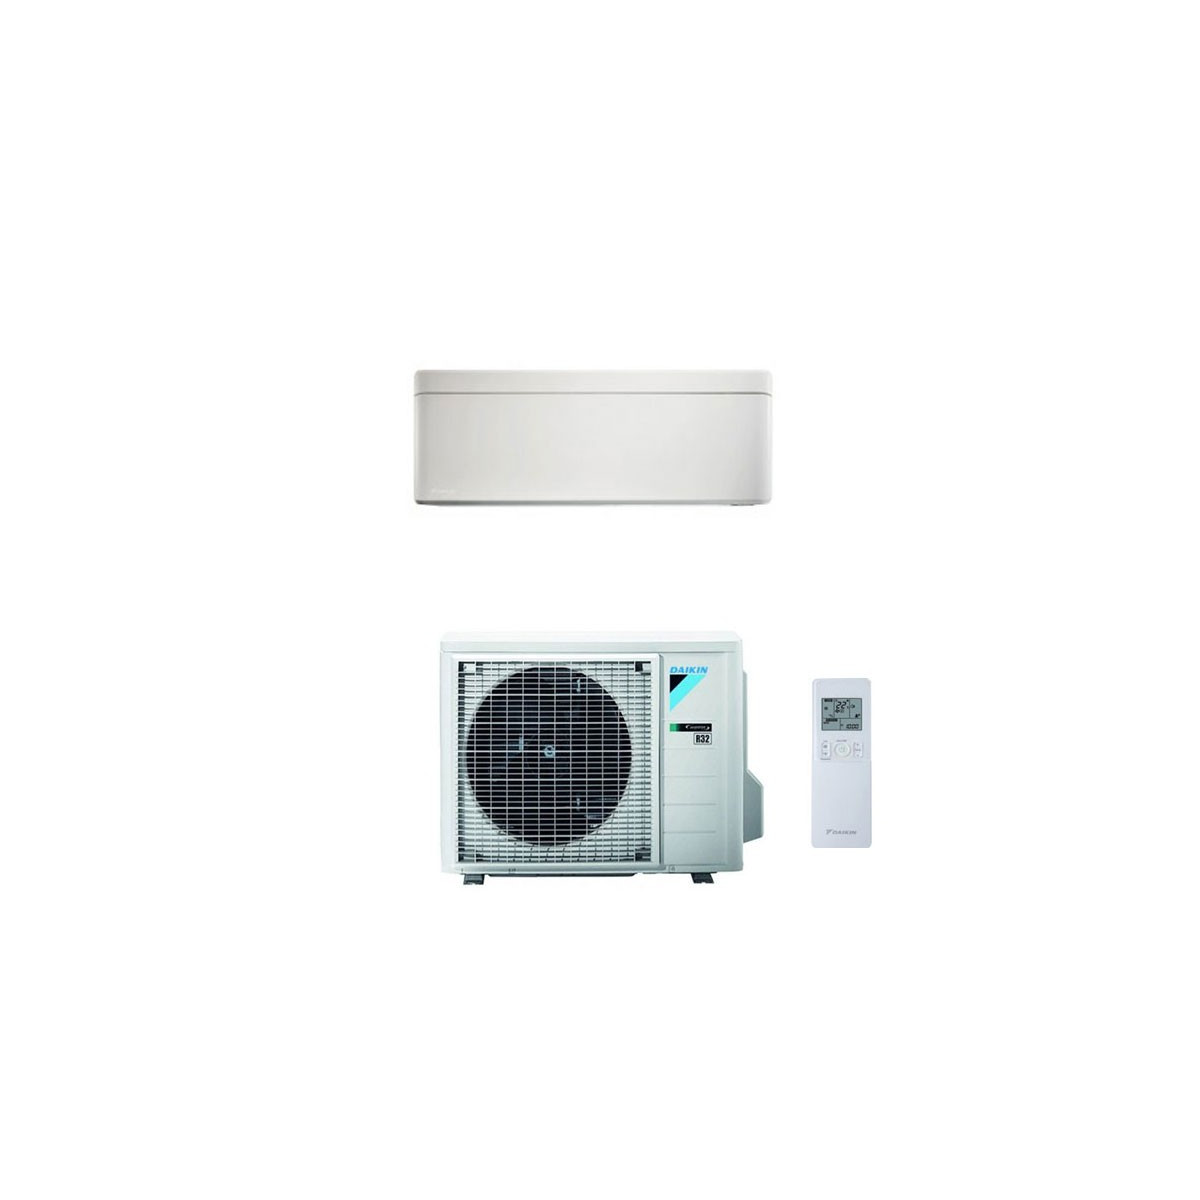 Condizionatore Daikin Stylish Bianco 9000 btu Inverter R32 A+++/A+++ WIFI